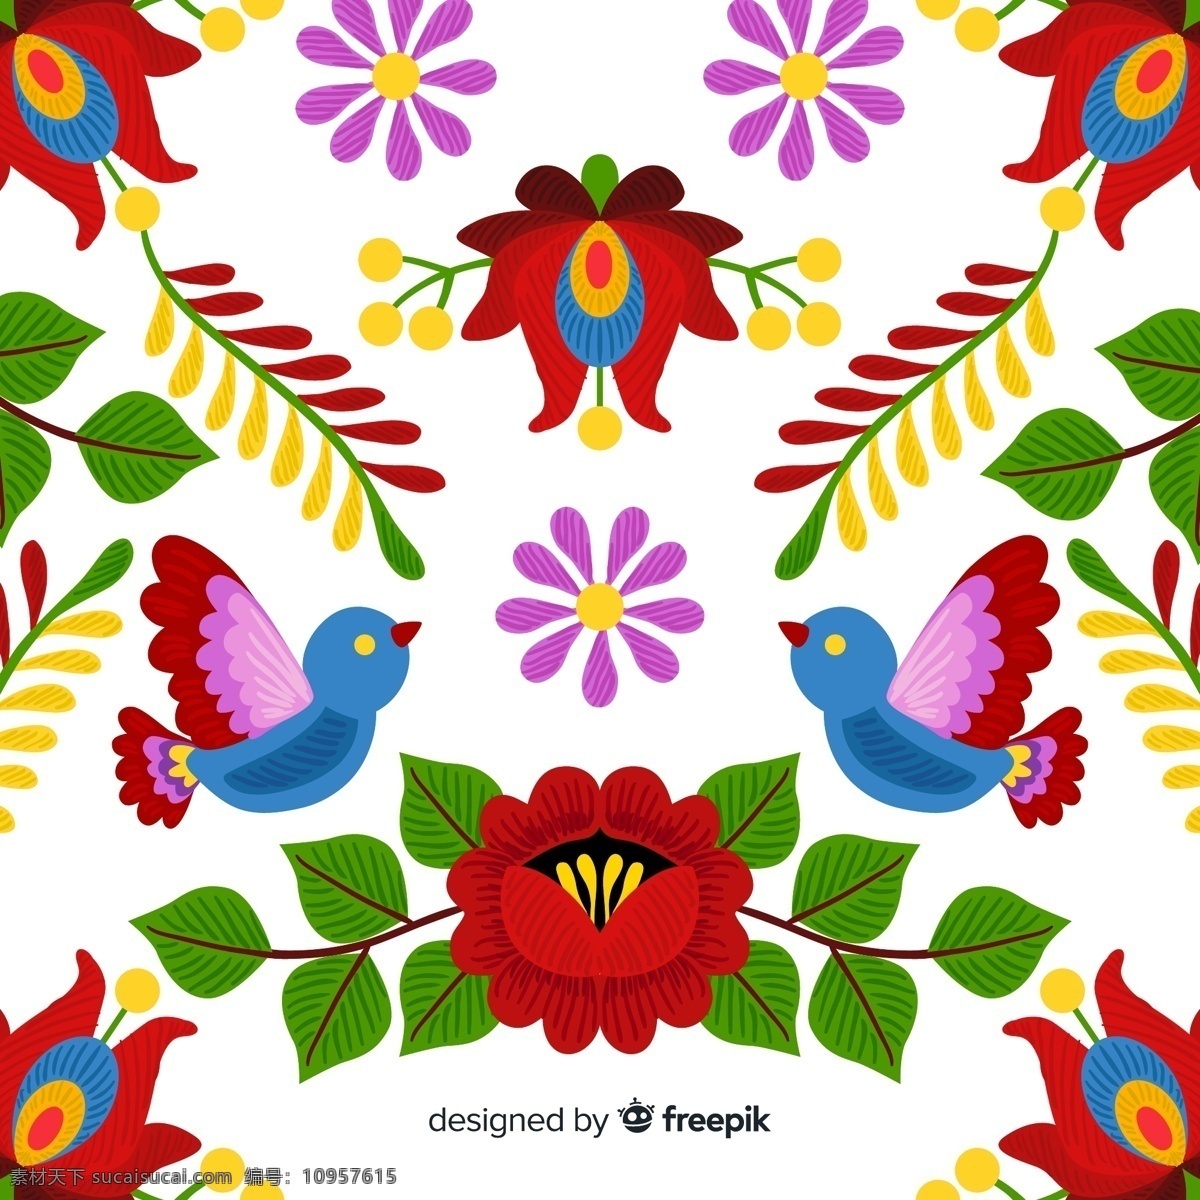 彩色抽象花卉 无缝背景 矢量素材 彩色 抽象 花卉 鸟 矢量图 ai格式 背景